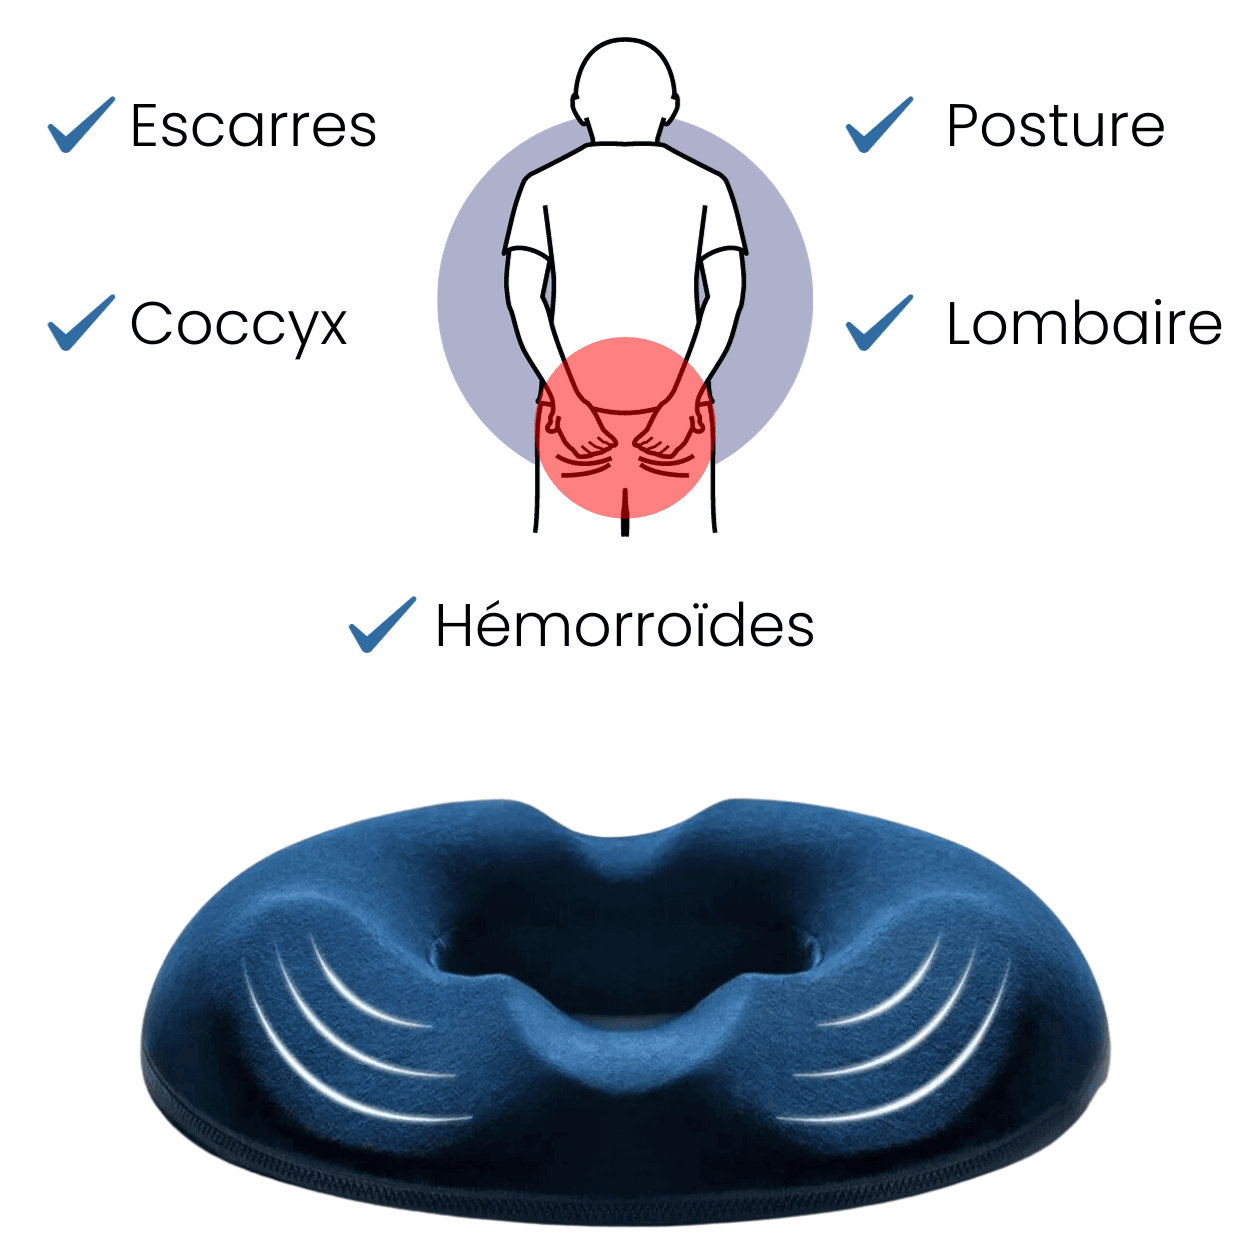 Coussin d'assise bouée - Soulage les douleurs hémorroïdaires, du bas du dos  et du coccyx